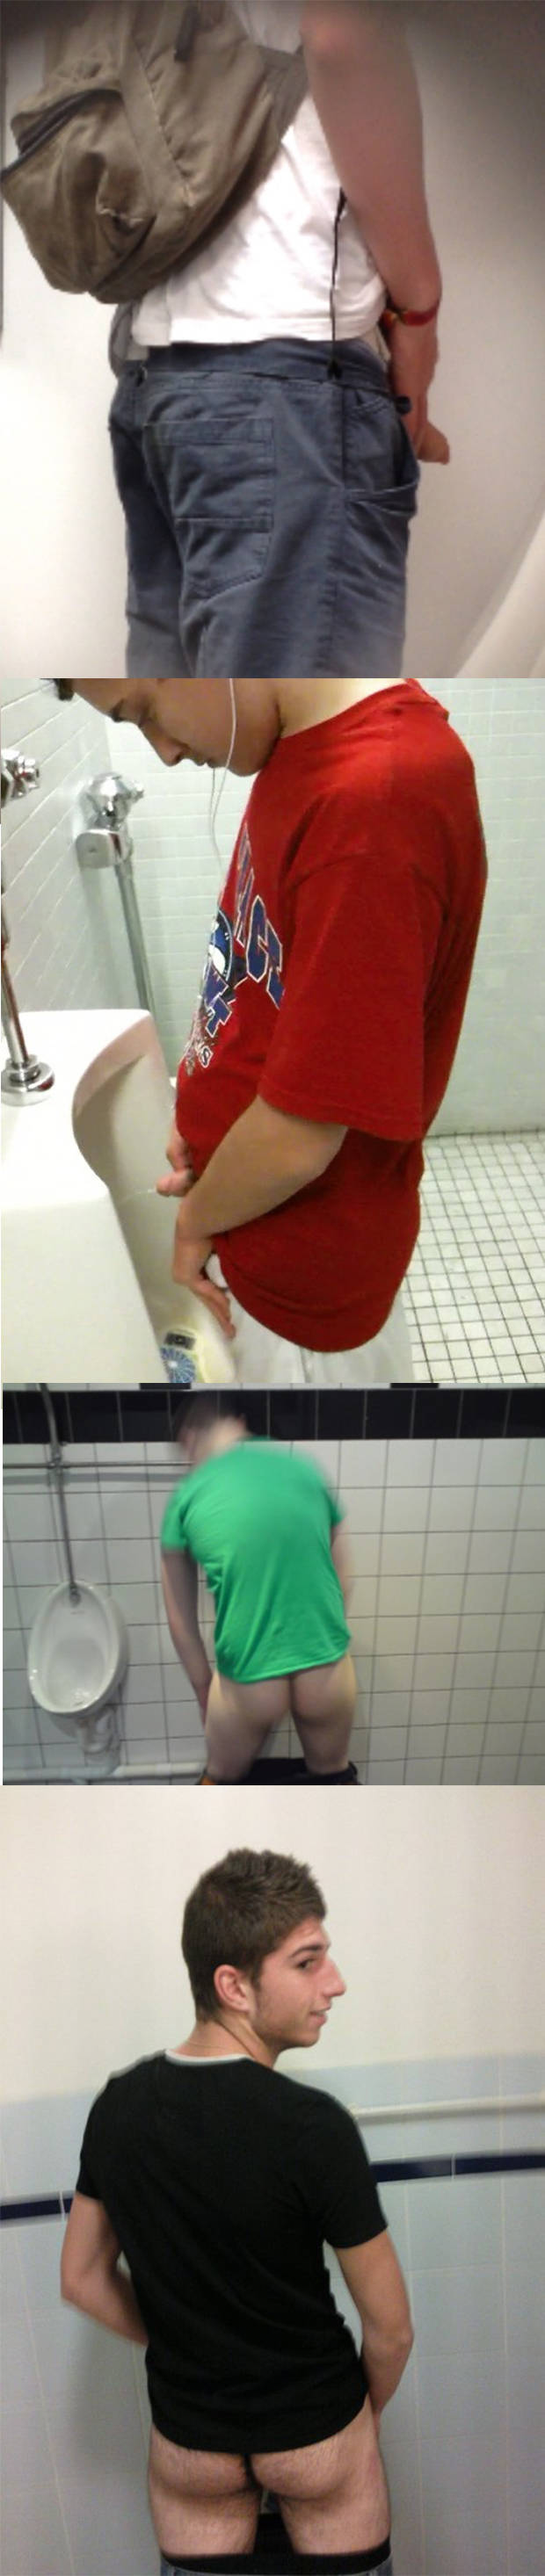 hidden cameras guys toilet peeing